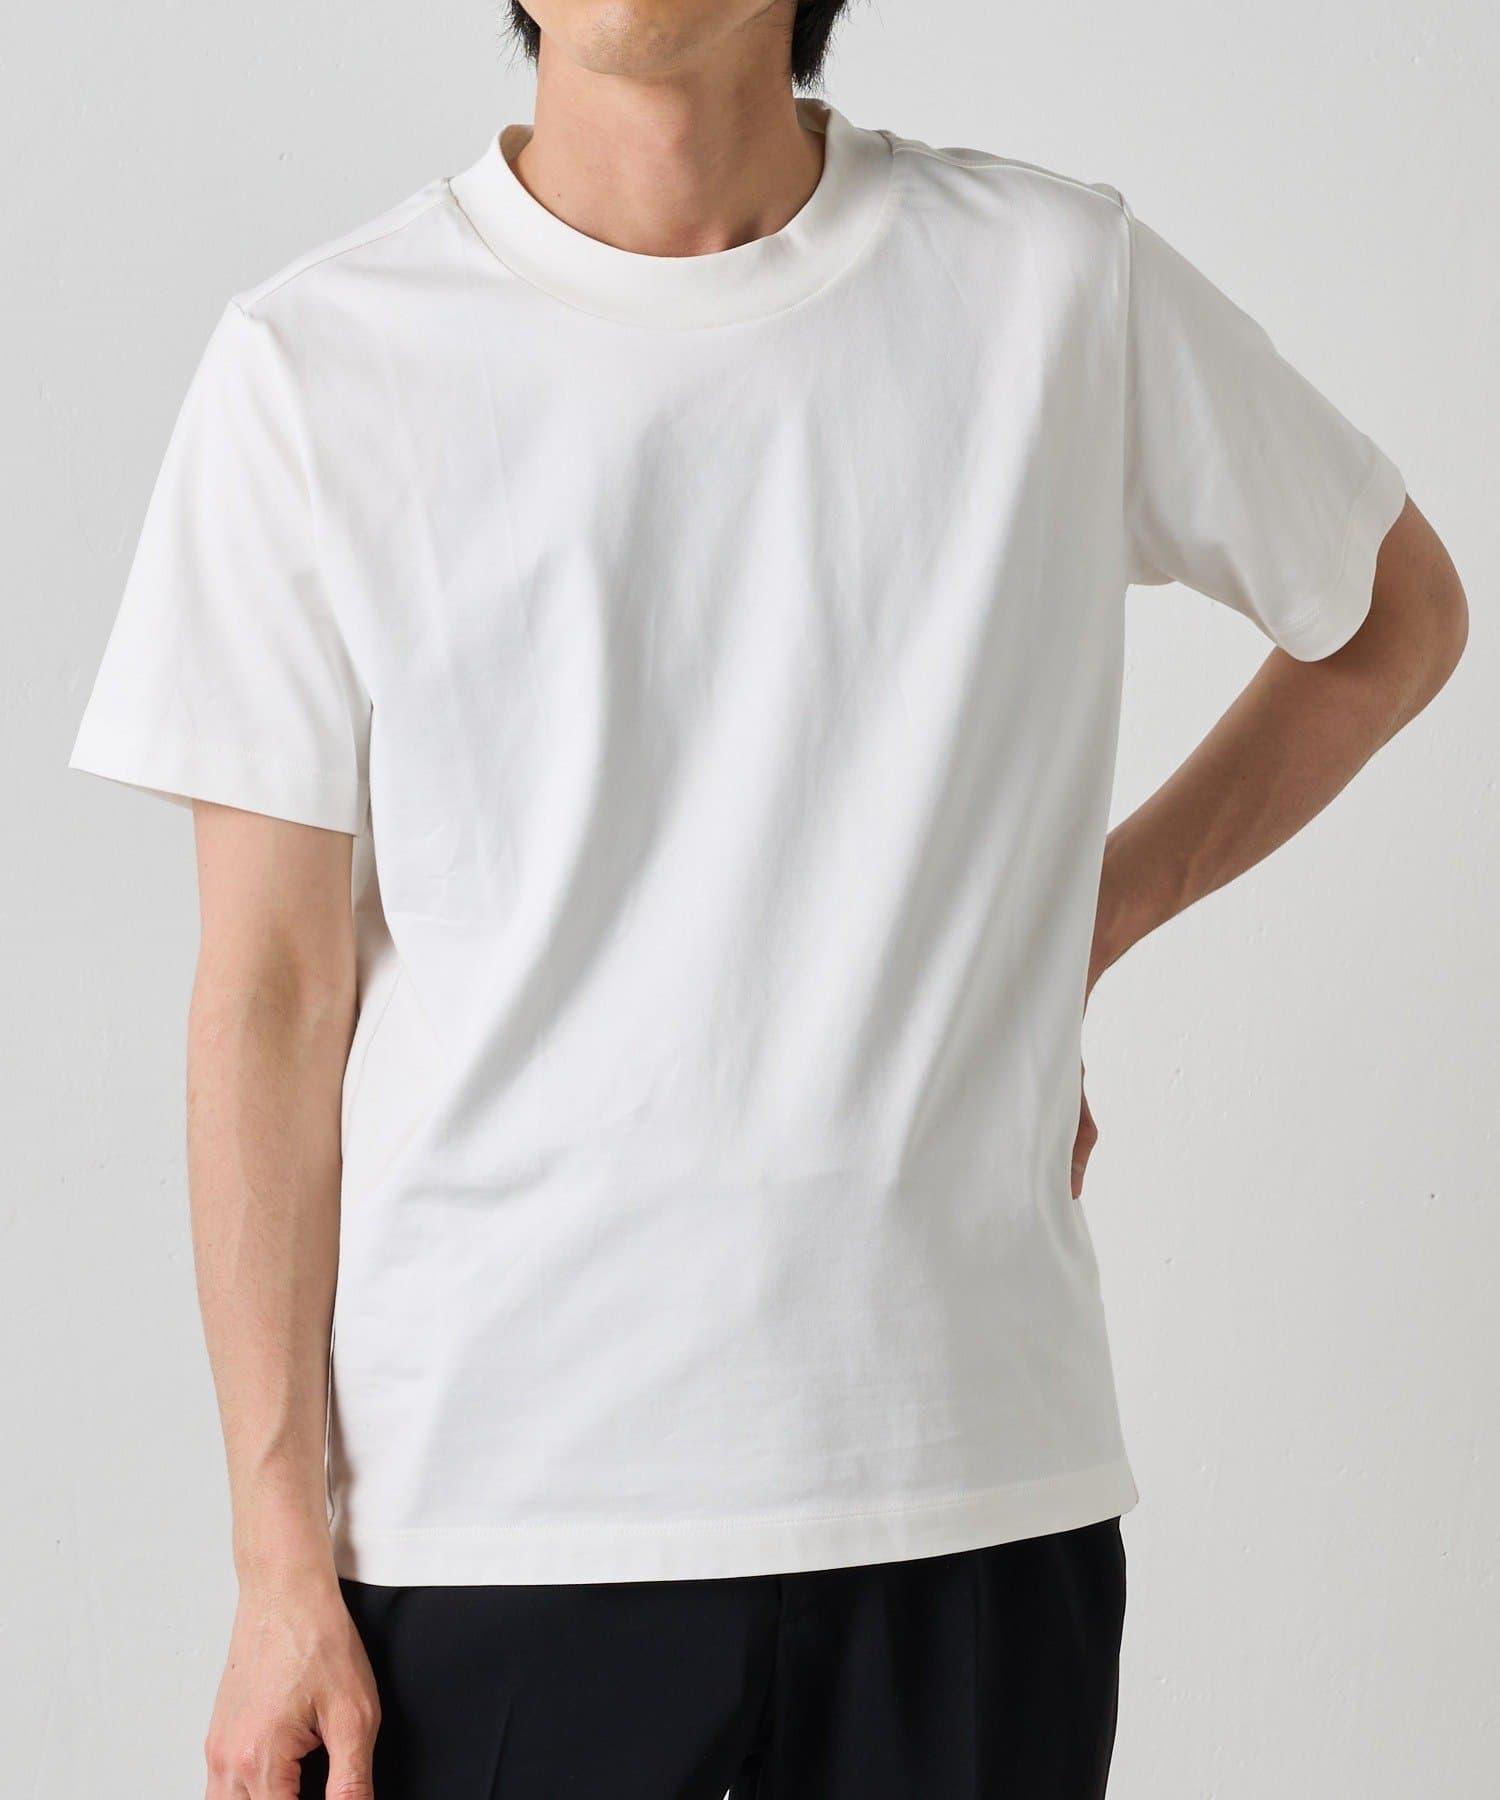 Lui's(ルイス) 【プレミアムスビン】BASIC Tシャツ